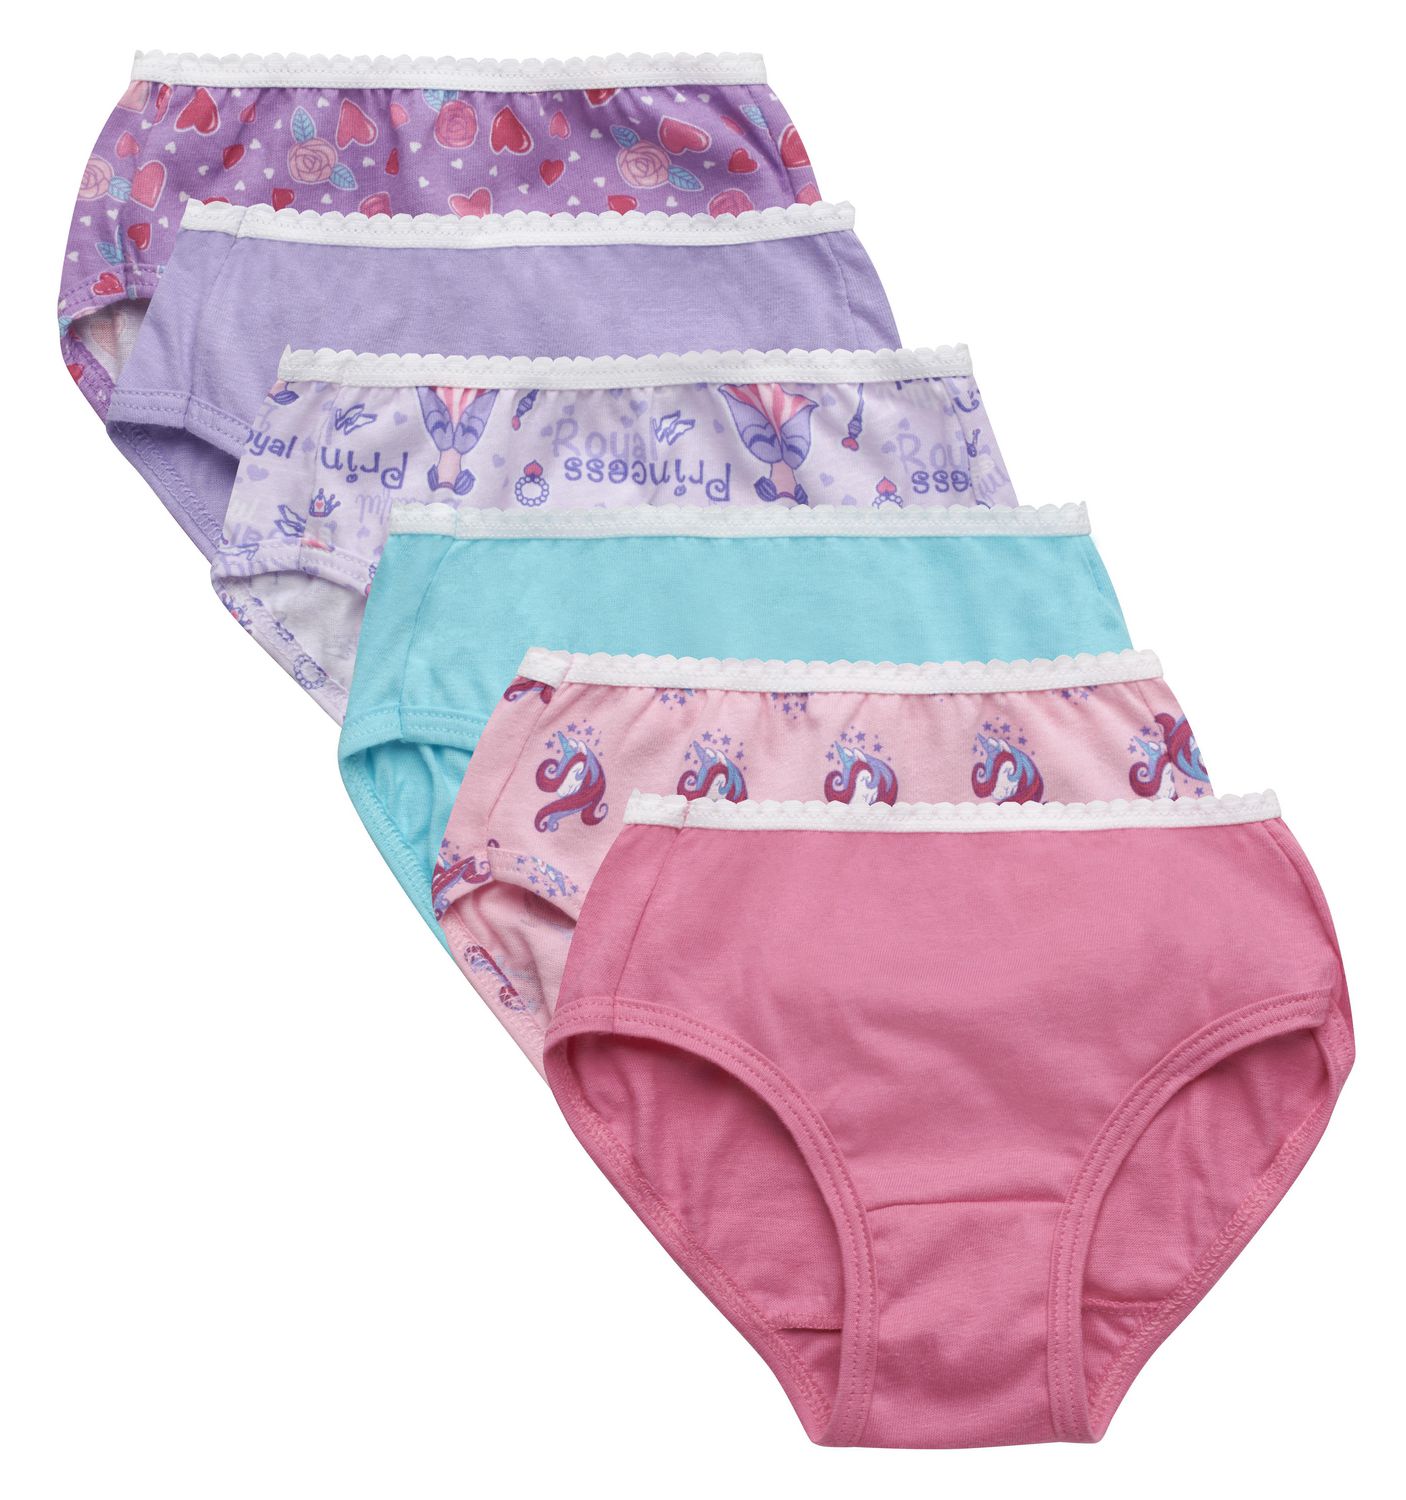  Disney Pixar Toy Story Girls Panties Underwear - 8